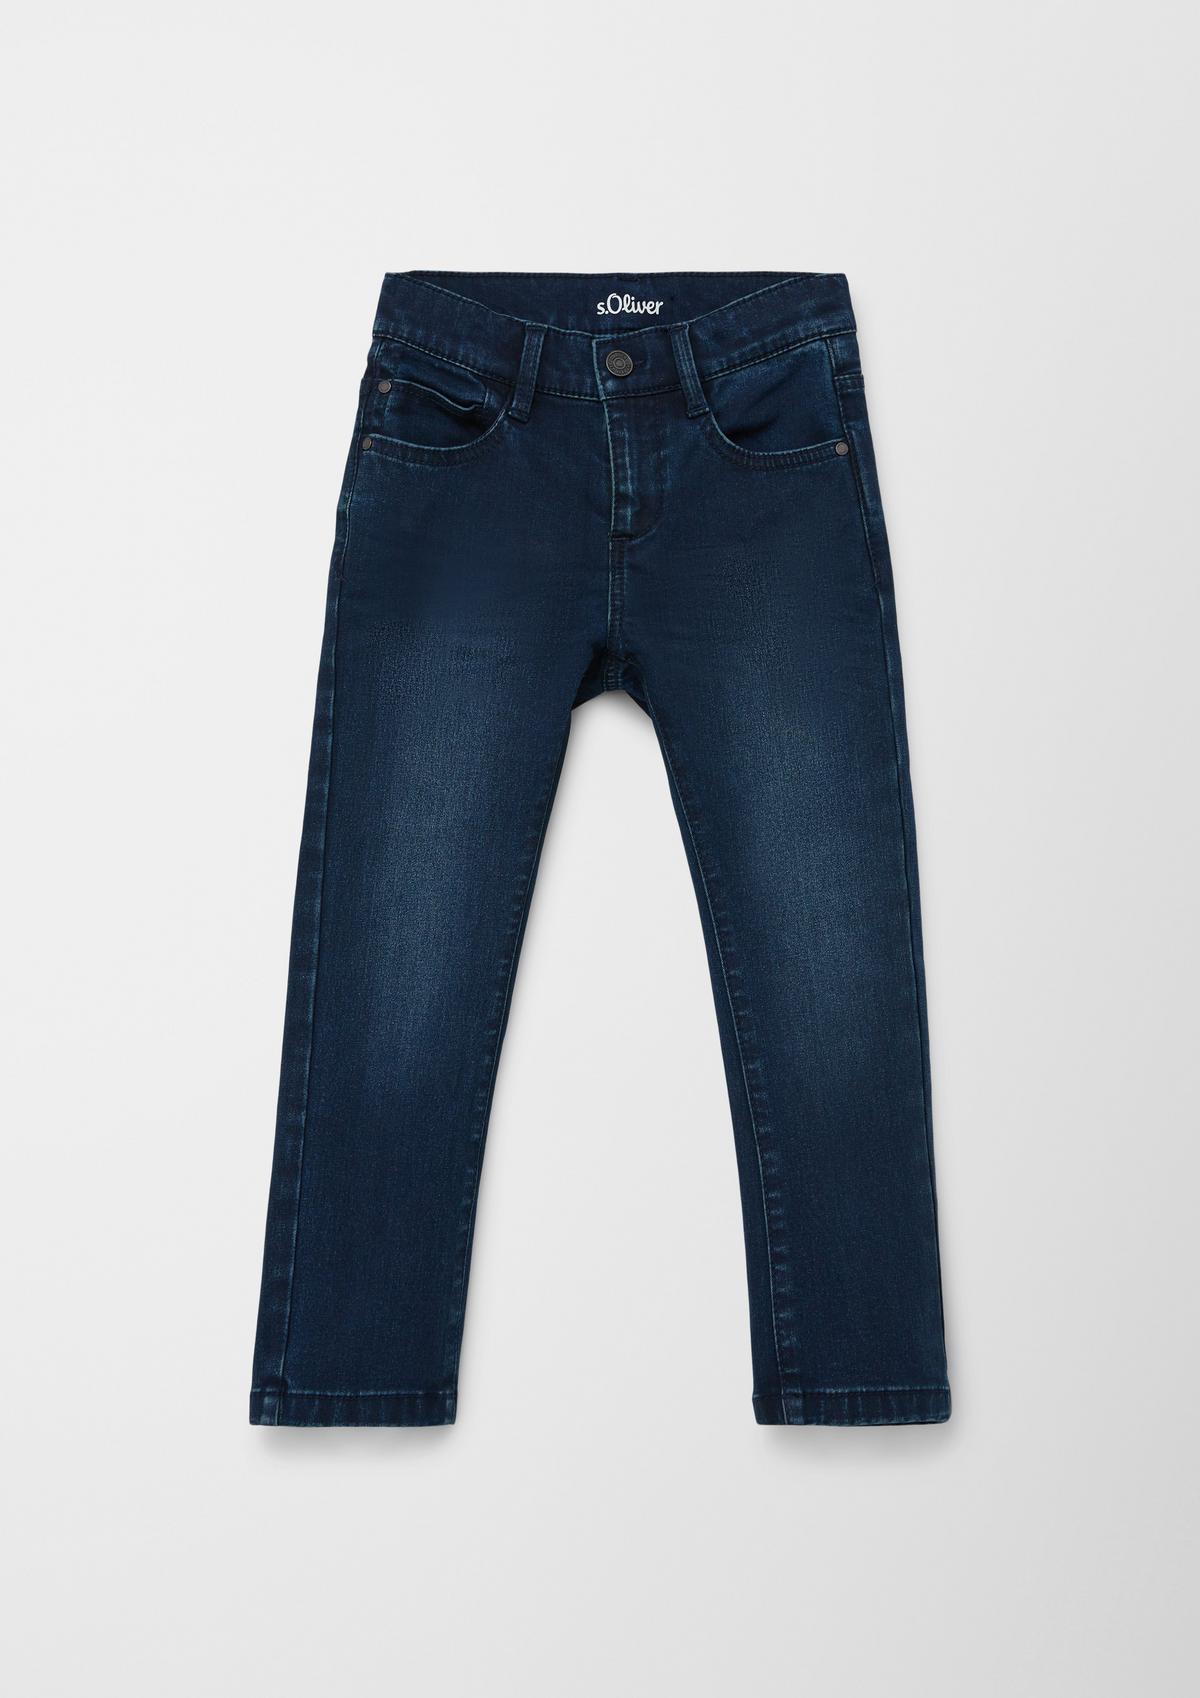 Jeans Pelle / regular fit / mid rise / straight leg / used look